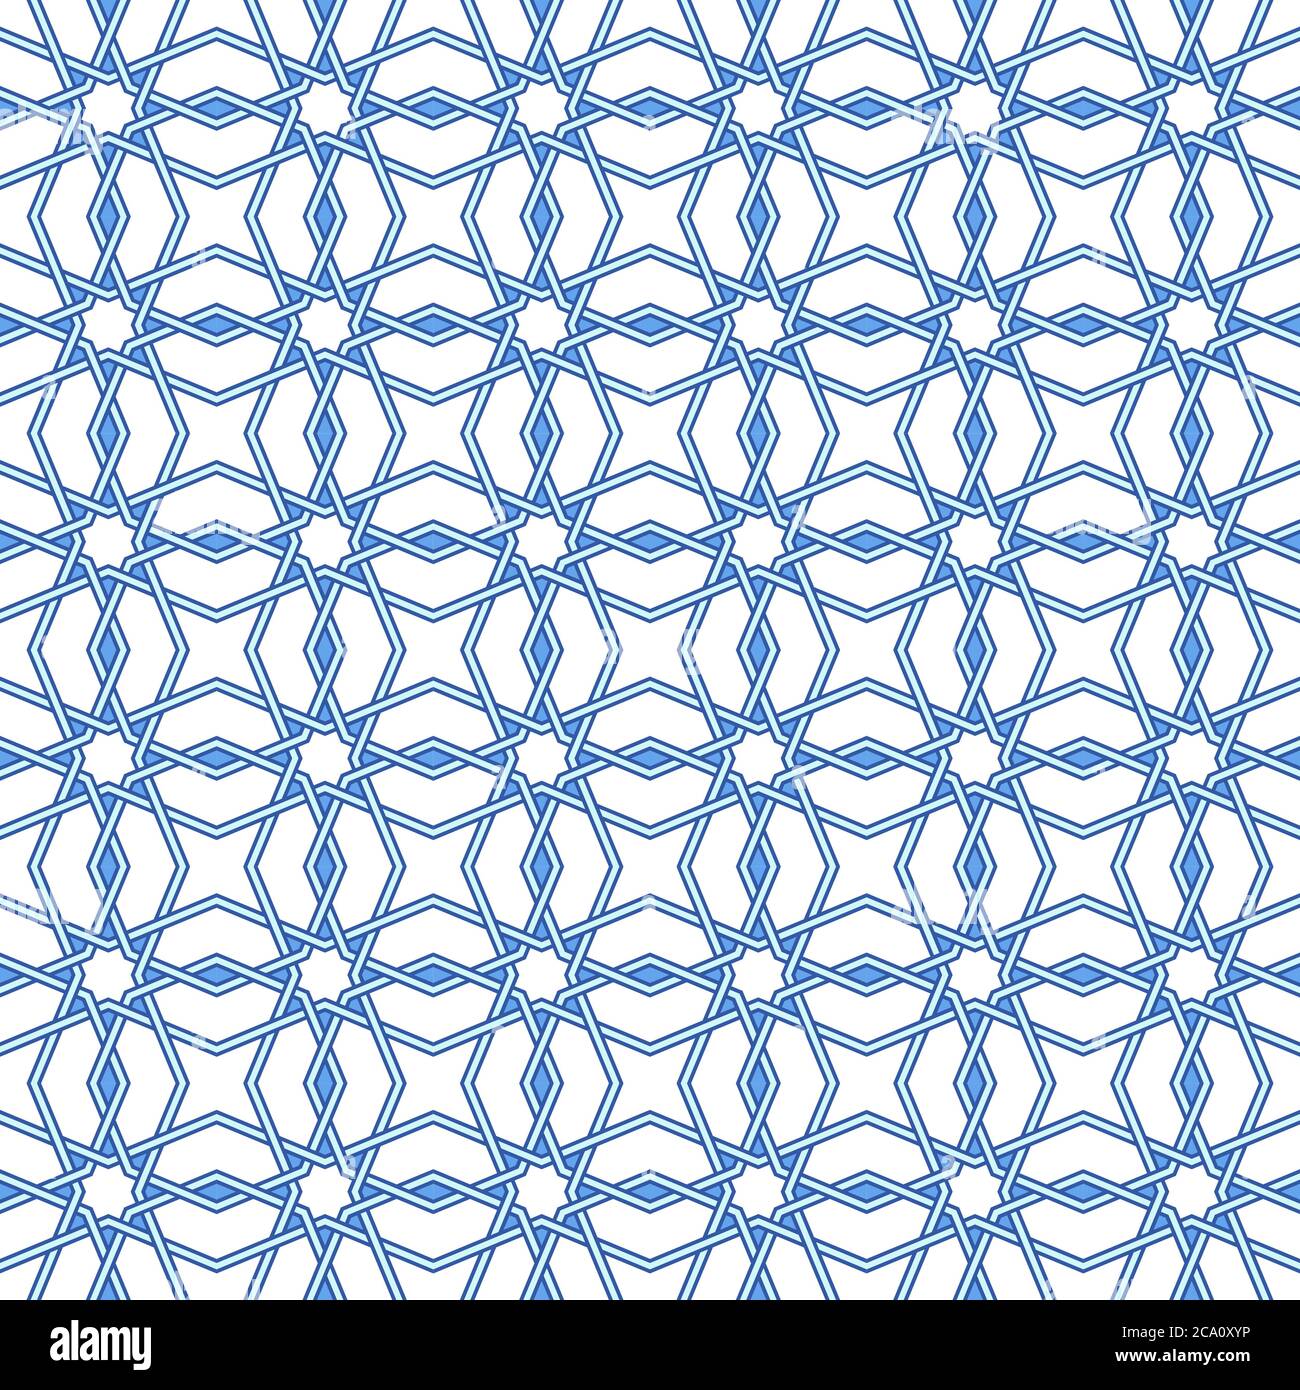 Traditionelle arabische Geometrie Muster Kunst. Marokkanische nahtlose Vektor-Muster. Portugiesisches Azulejo-Bodenfliesen-Design. Abstrakter geometrischer Hintergrund in blu Stock Vektor